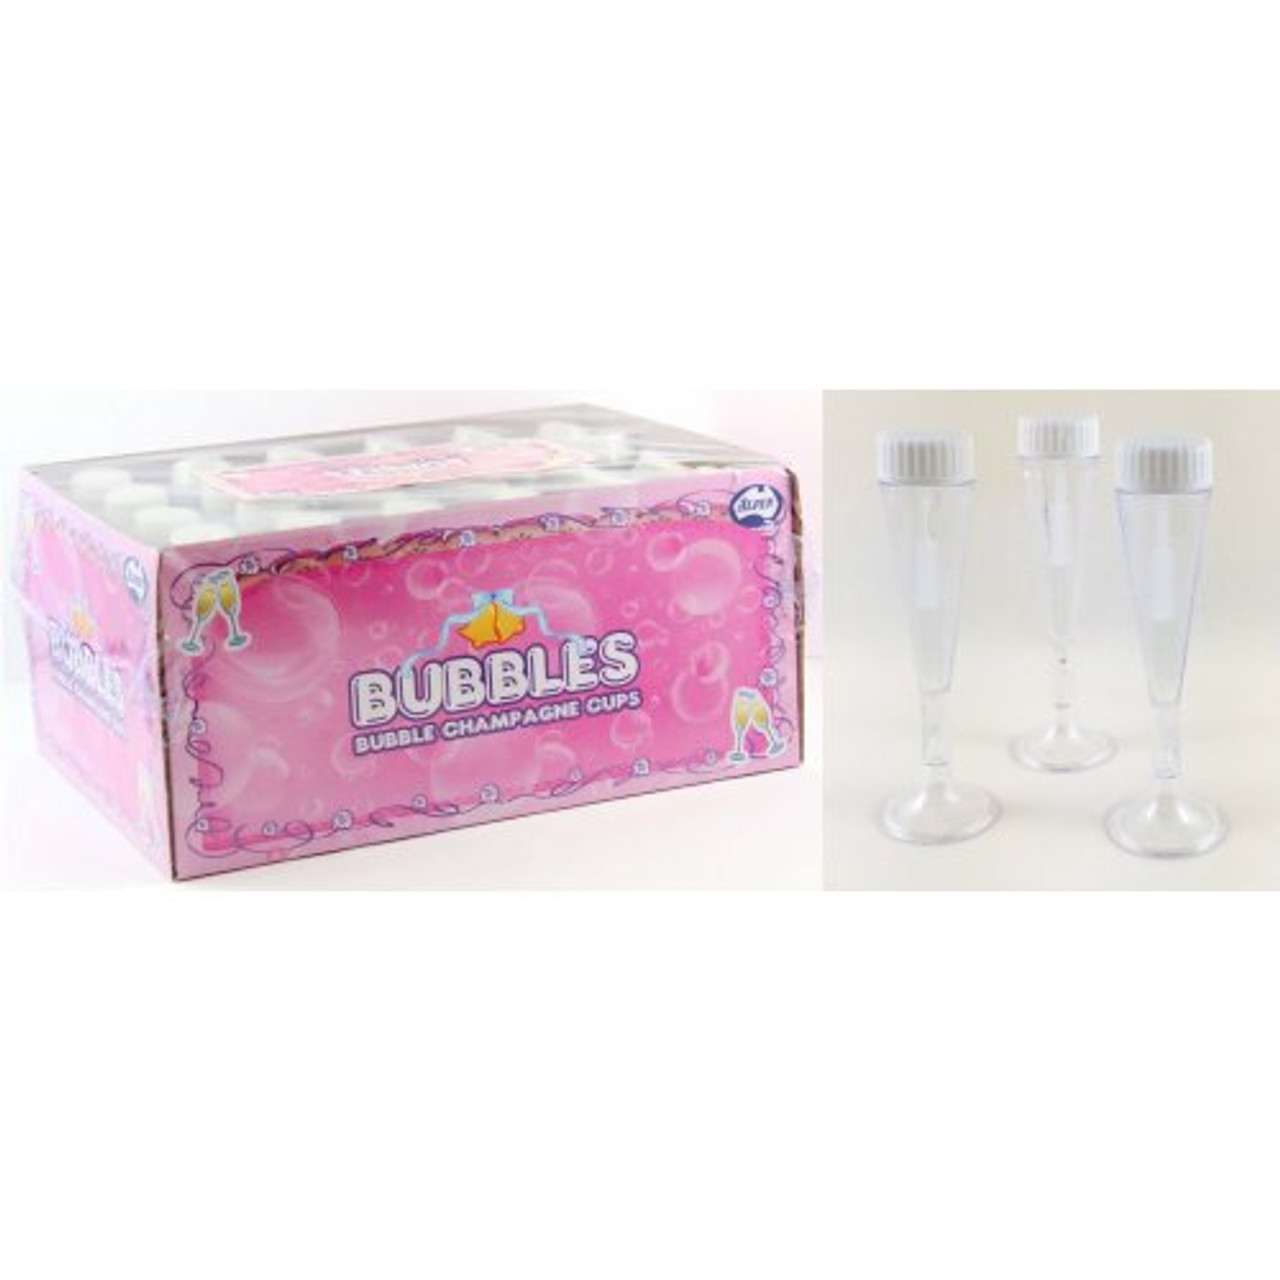 CHAMPAGNE GLASS BUBBLES BOX 24